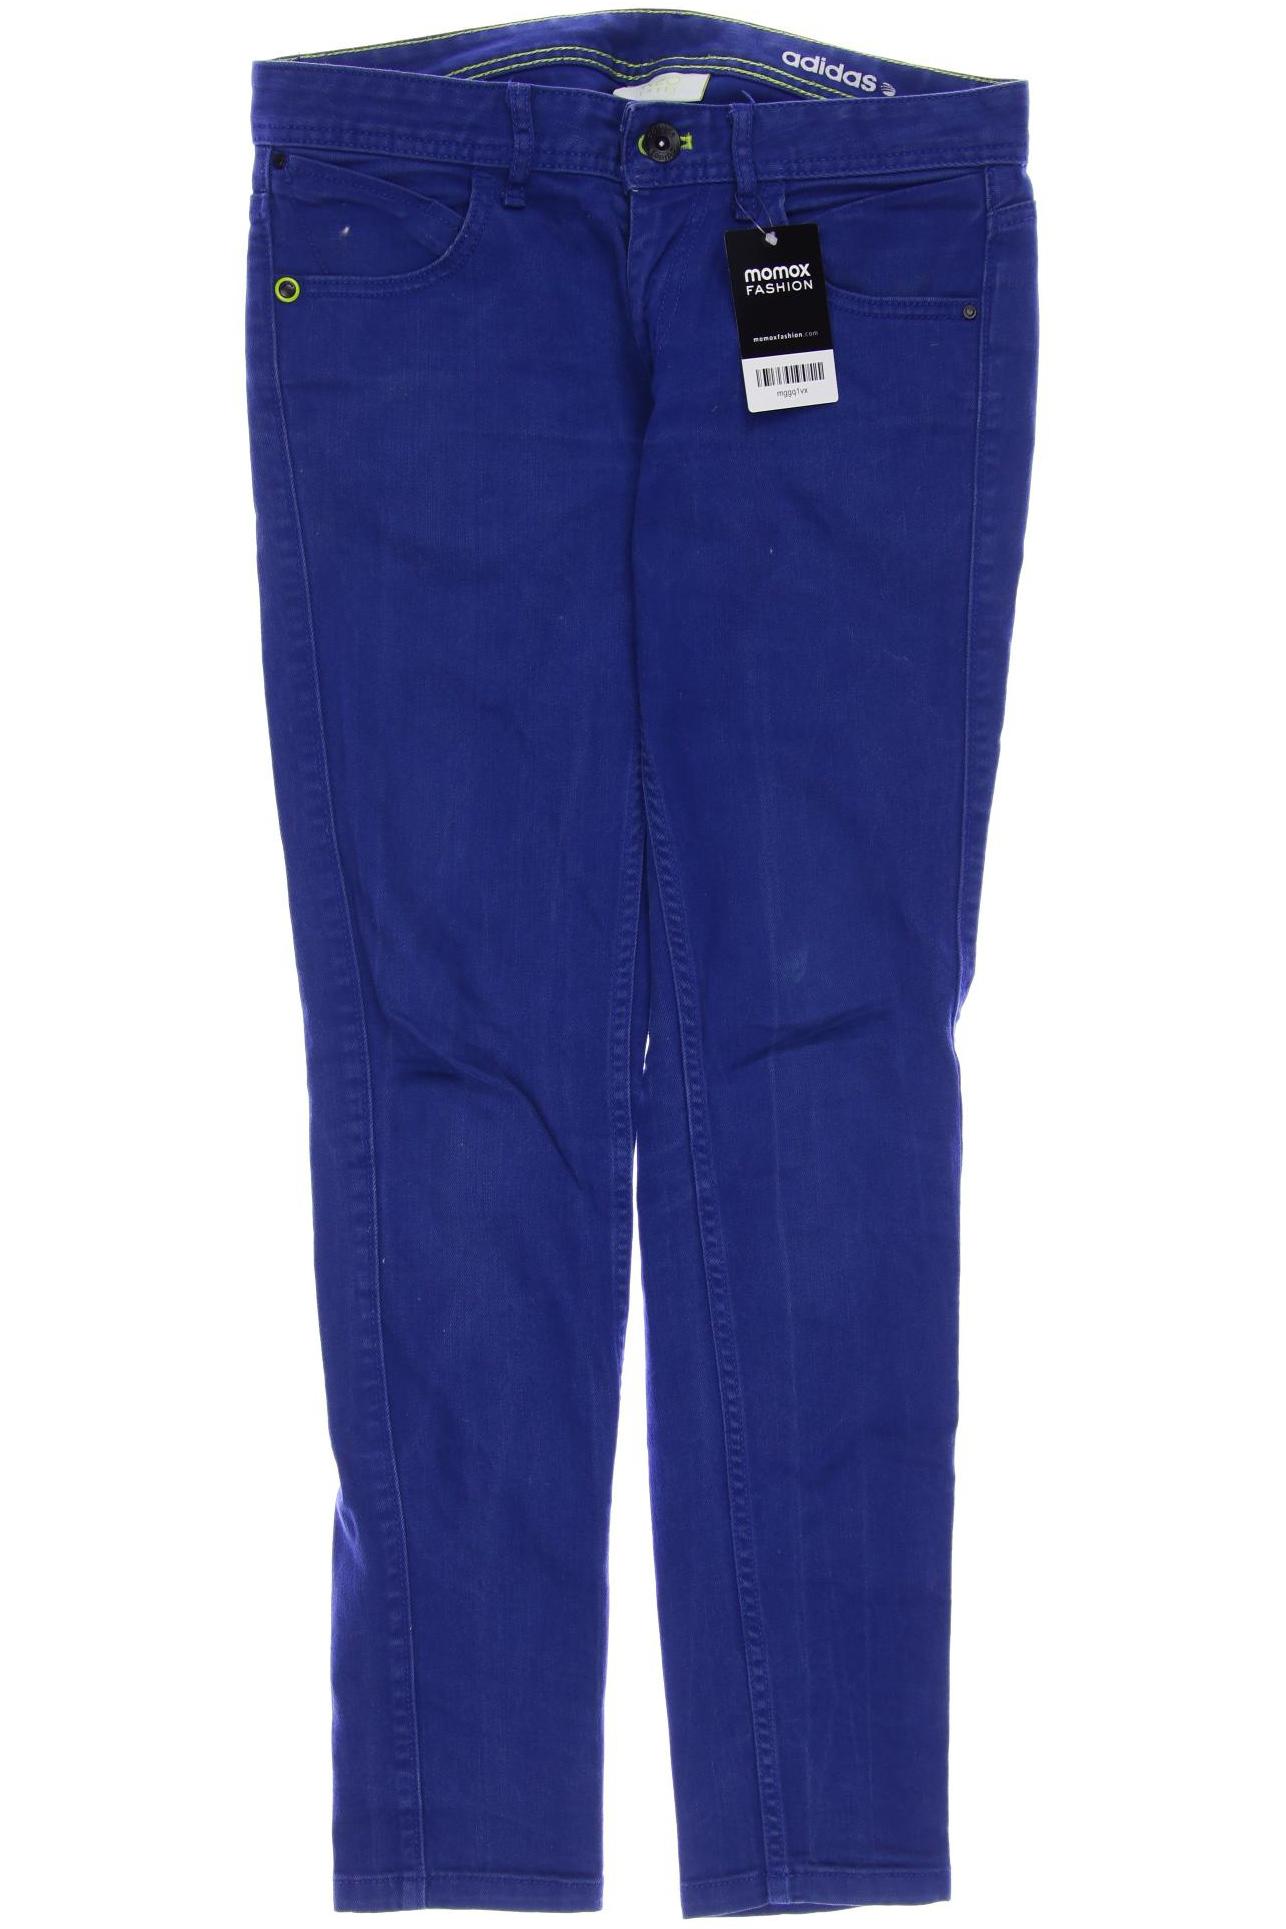 adidas NEO Damen Jeans, blau von adidas neo